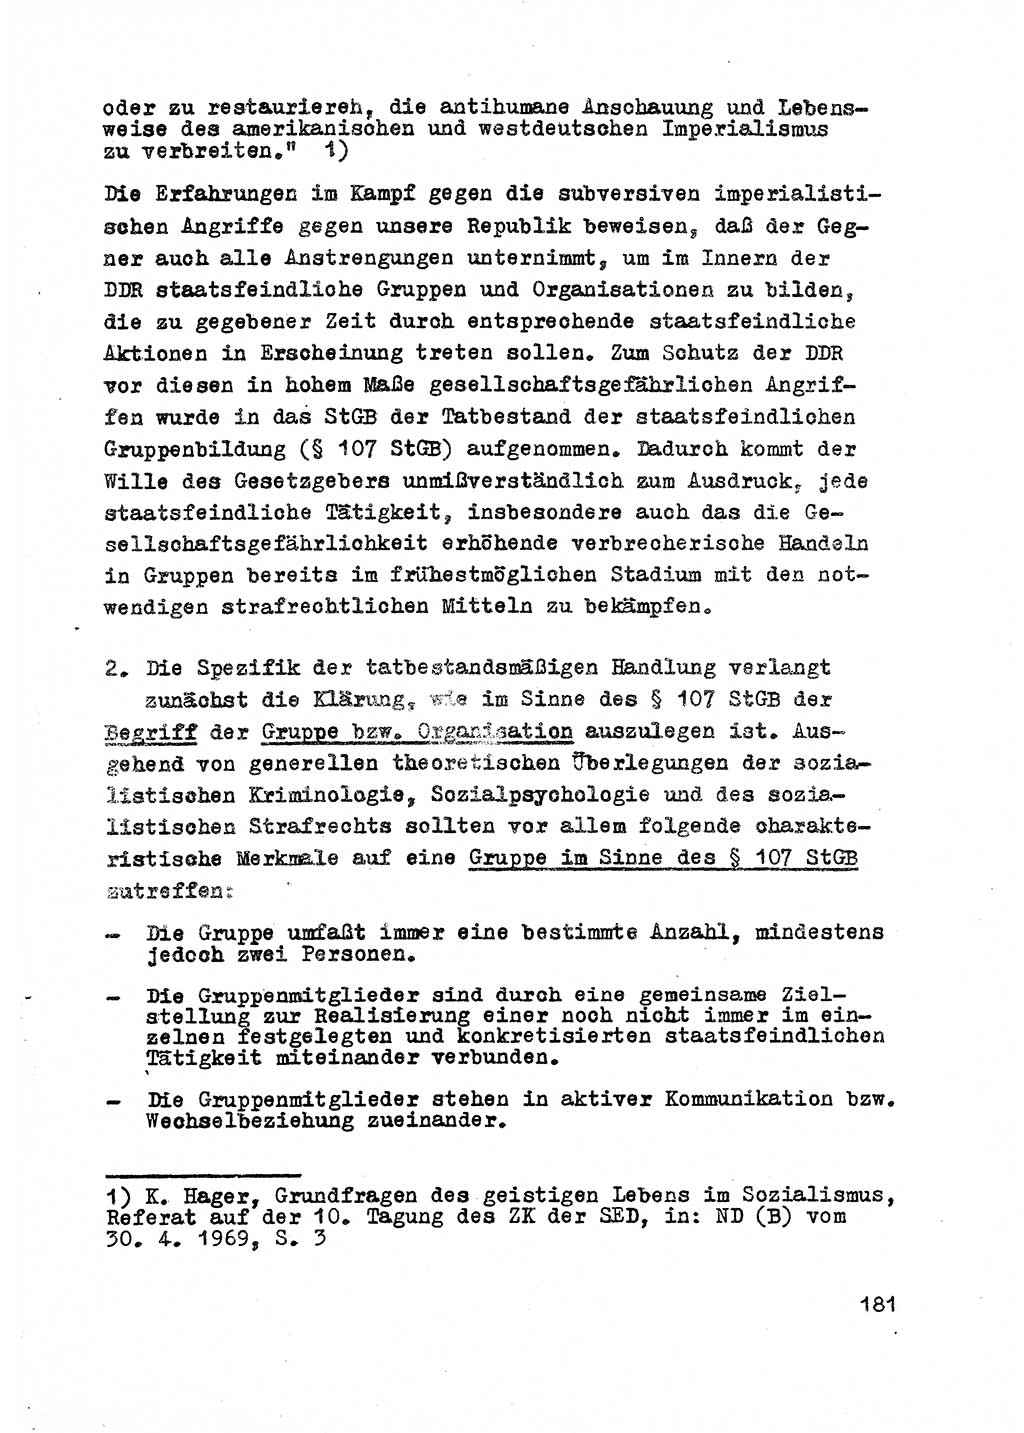 Strafrecht der DDR (Deutsche Demokratische Republik), Besonderer Teil, Lehrmaterial, Heft 2 1969, Seite 181 (Strafr. DDR BT Lehrmat. H. 2 1969, S. 181)